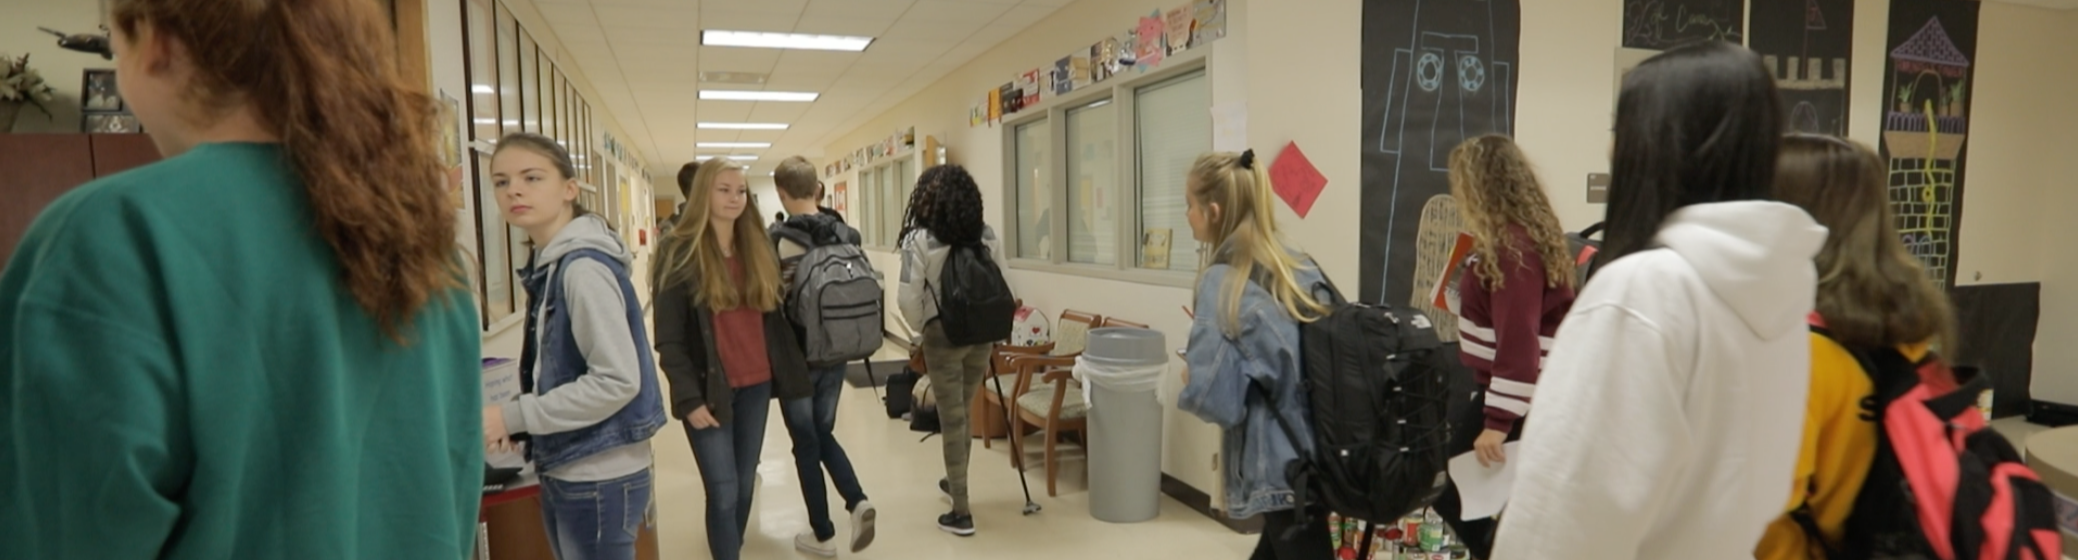 Group of teens walking at school hallway